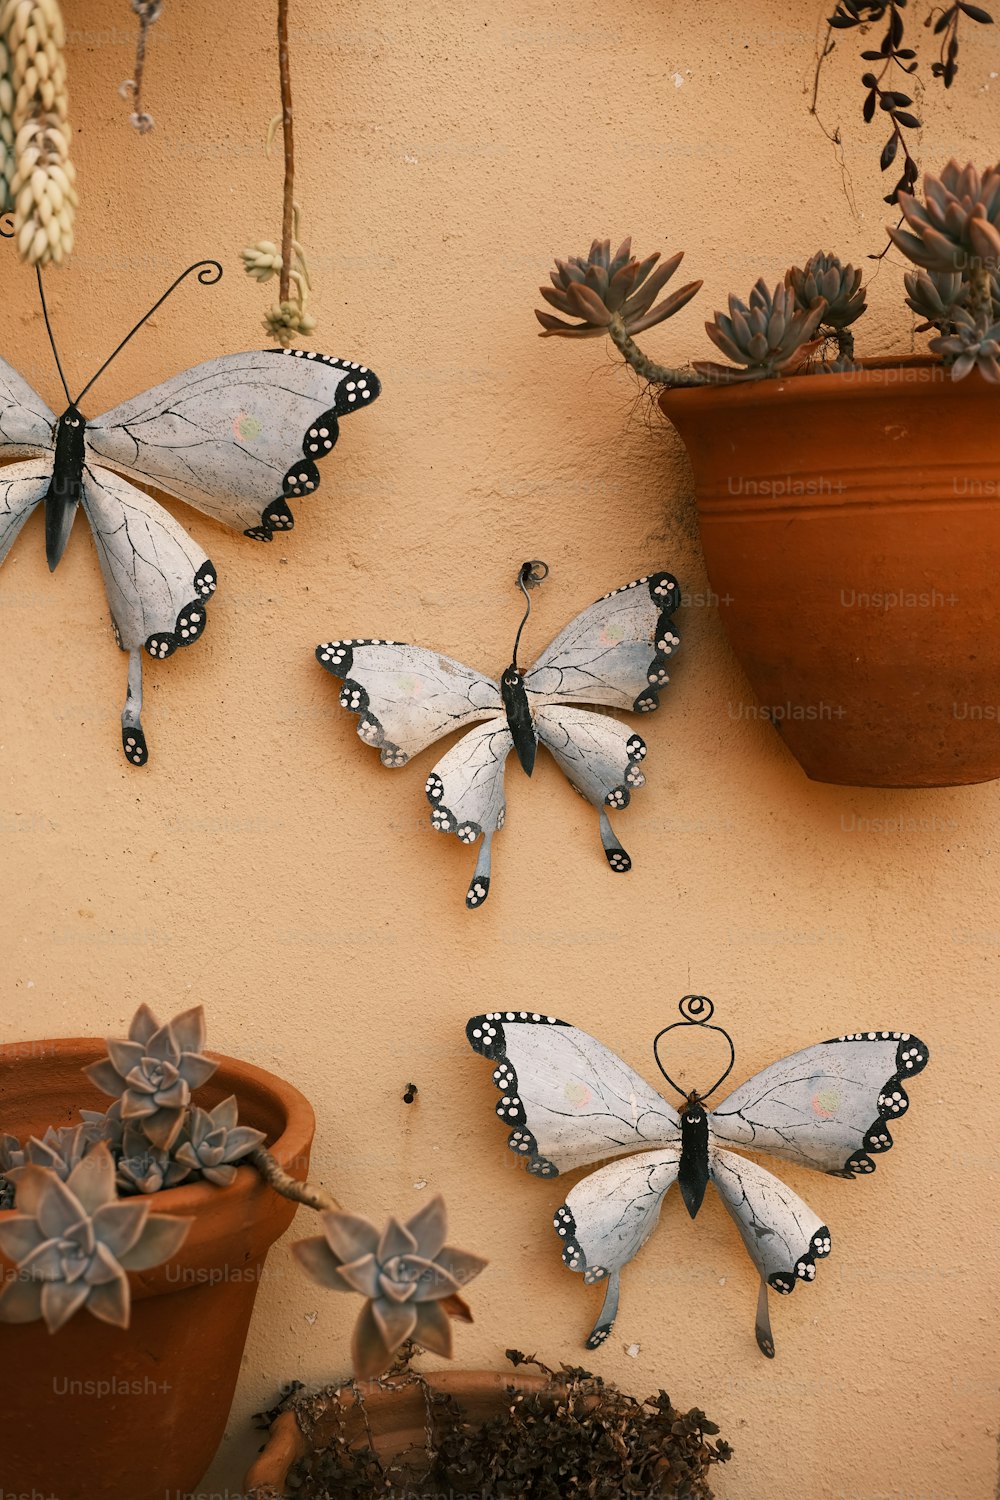 três borboletas estão penduradas em uma parede ao lado de um vaso de plantas